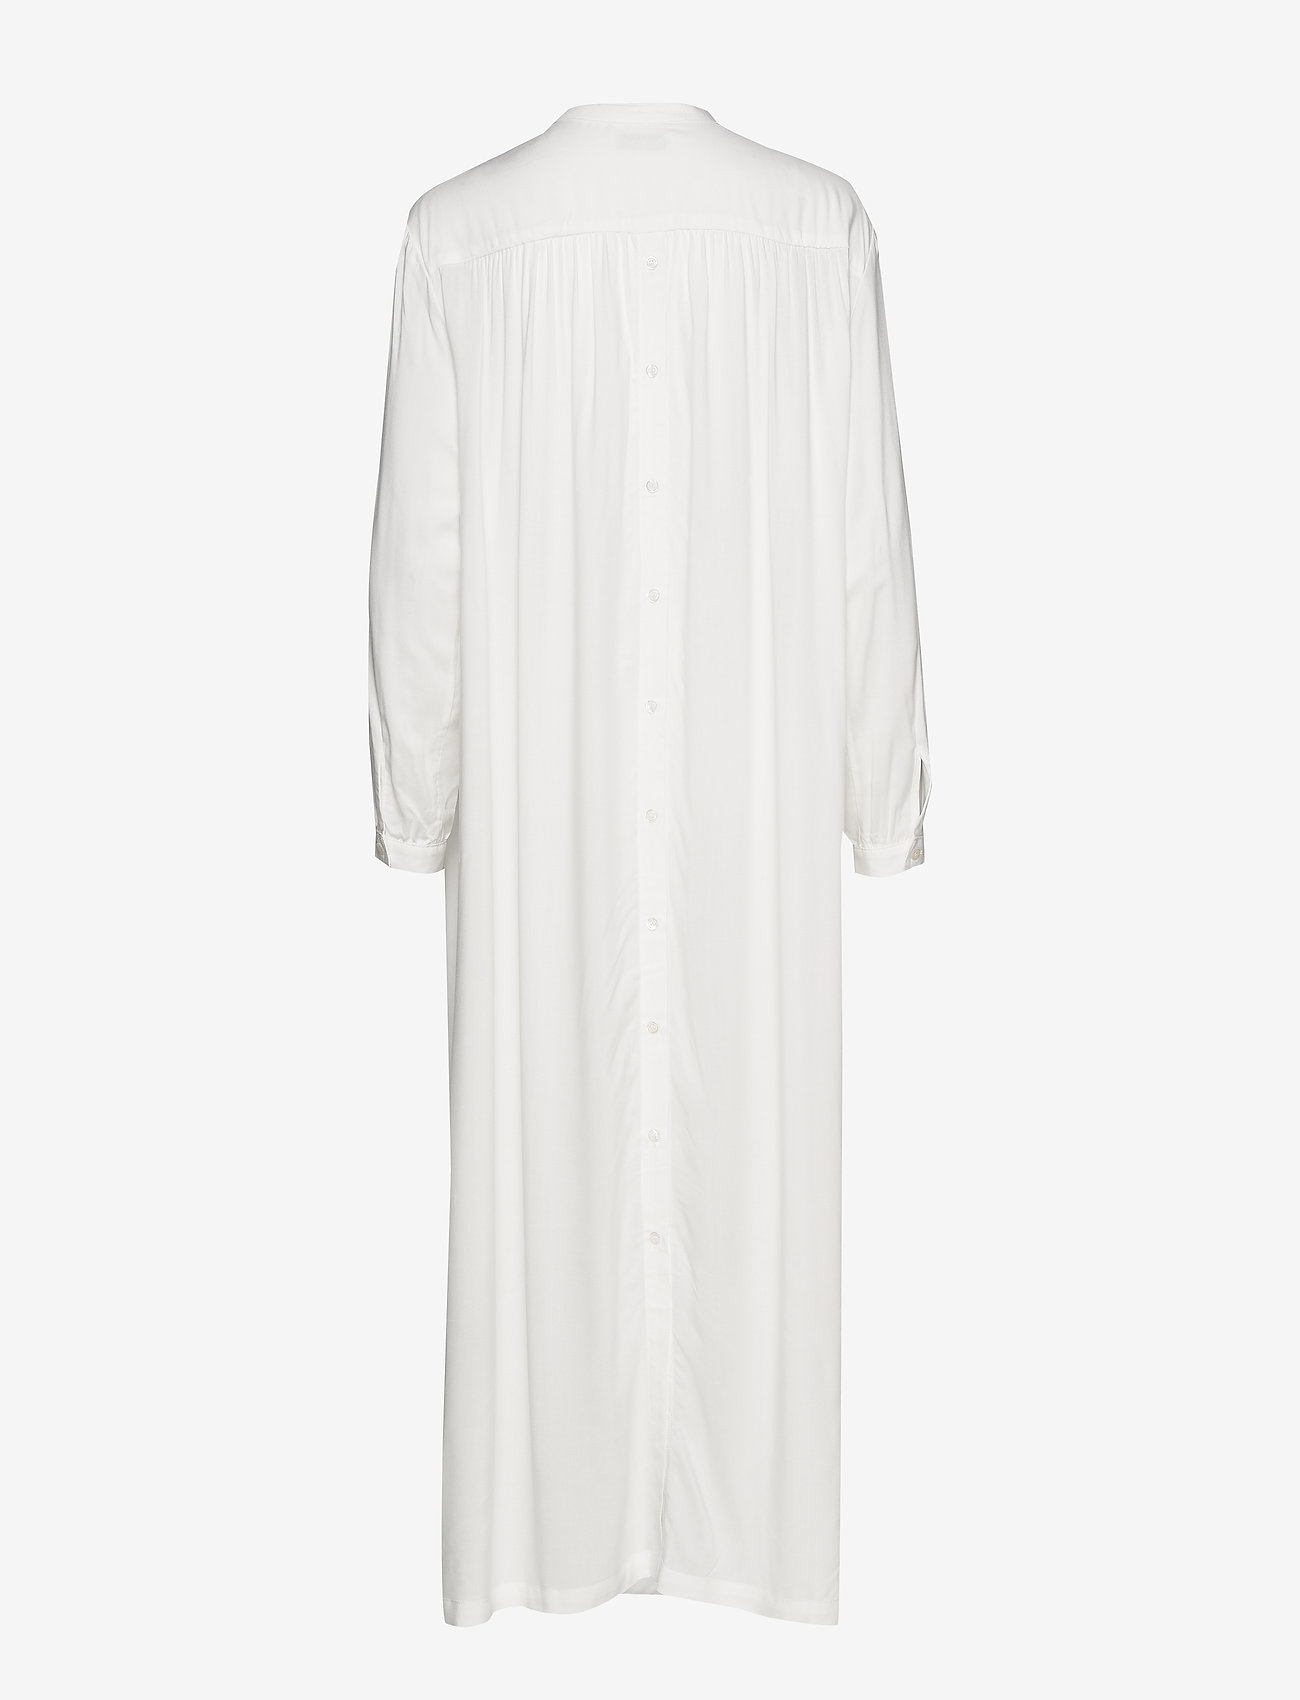 RODEBJER - RODEBJER ART - marškinių tipo suknelės - white - 1